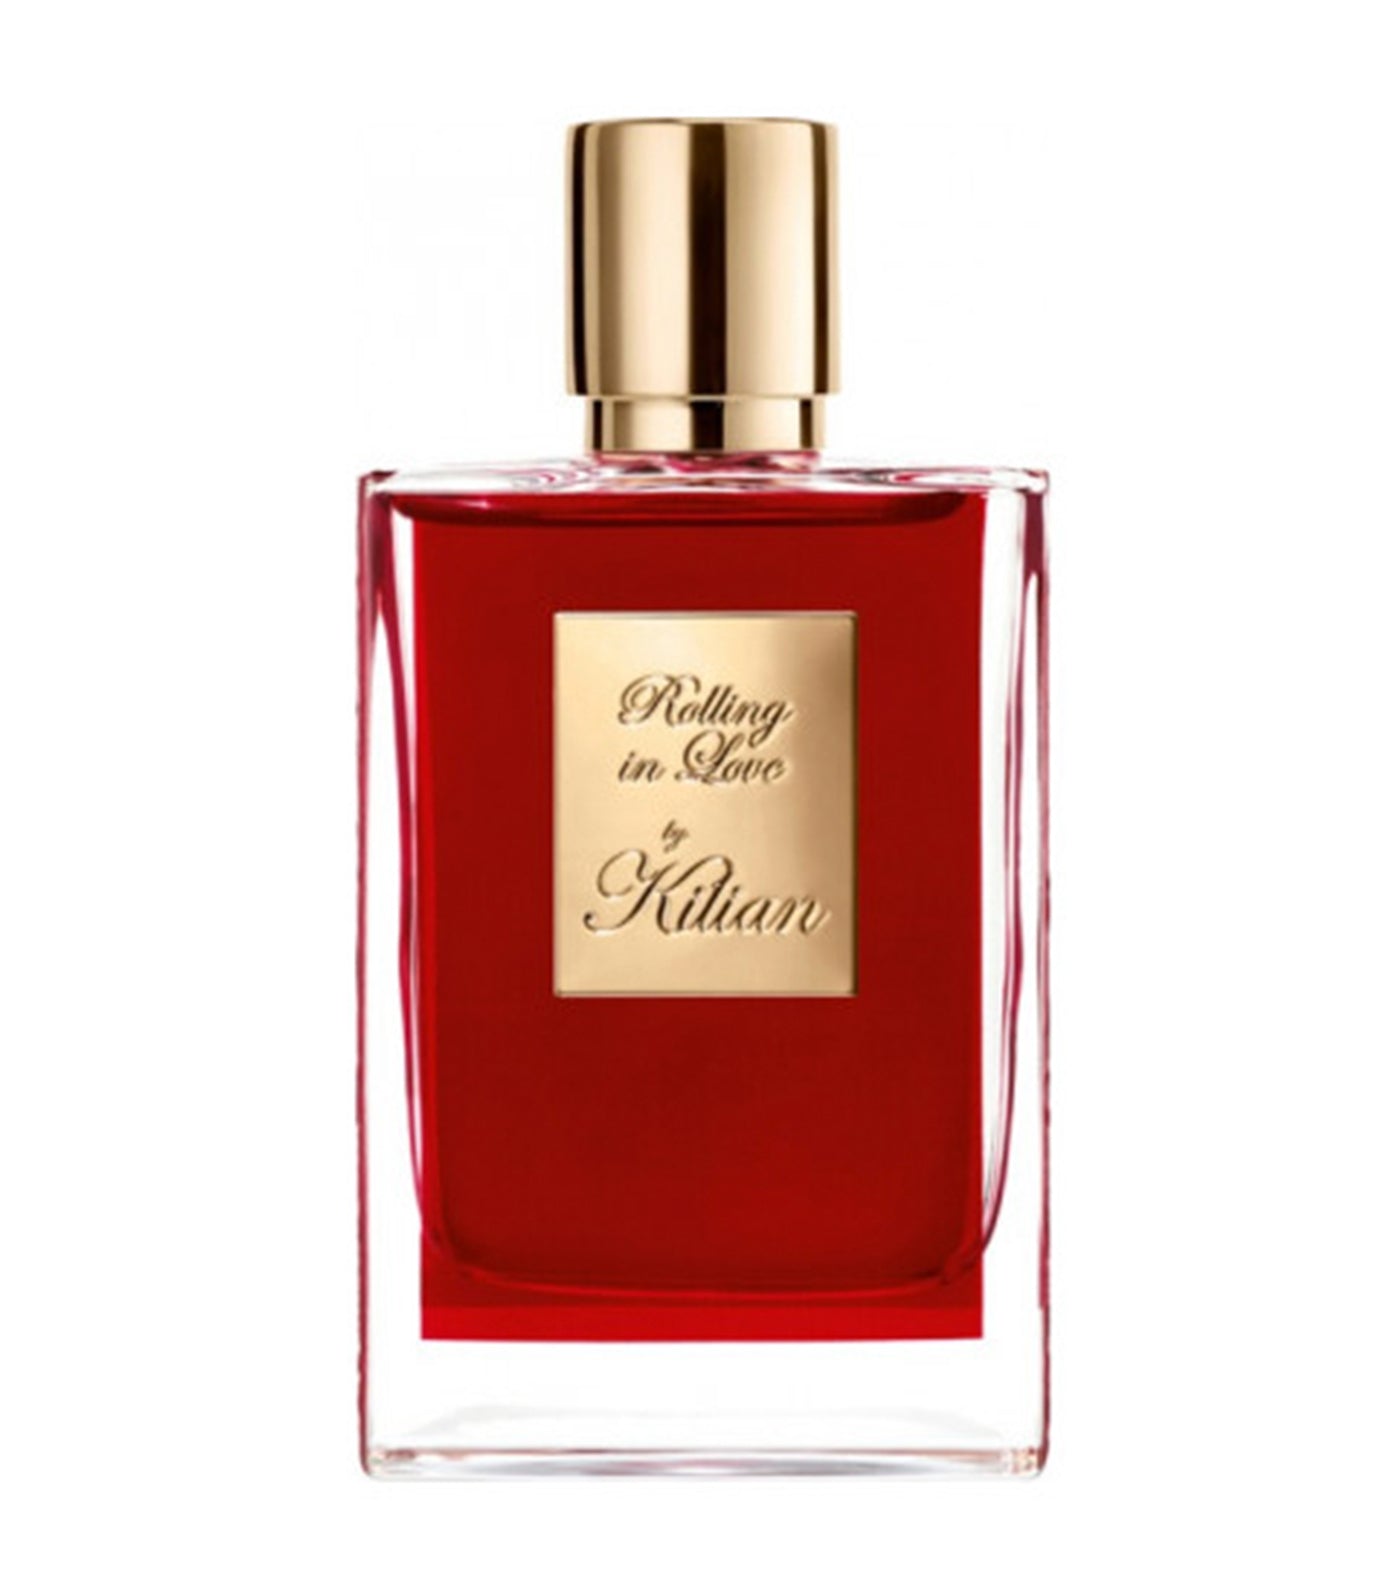 Kilian Paris Rolling in Love Eau de Parfum